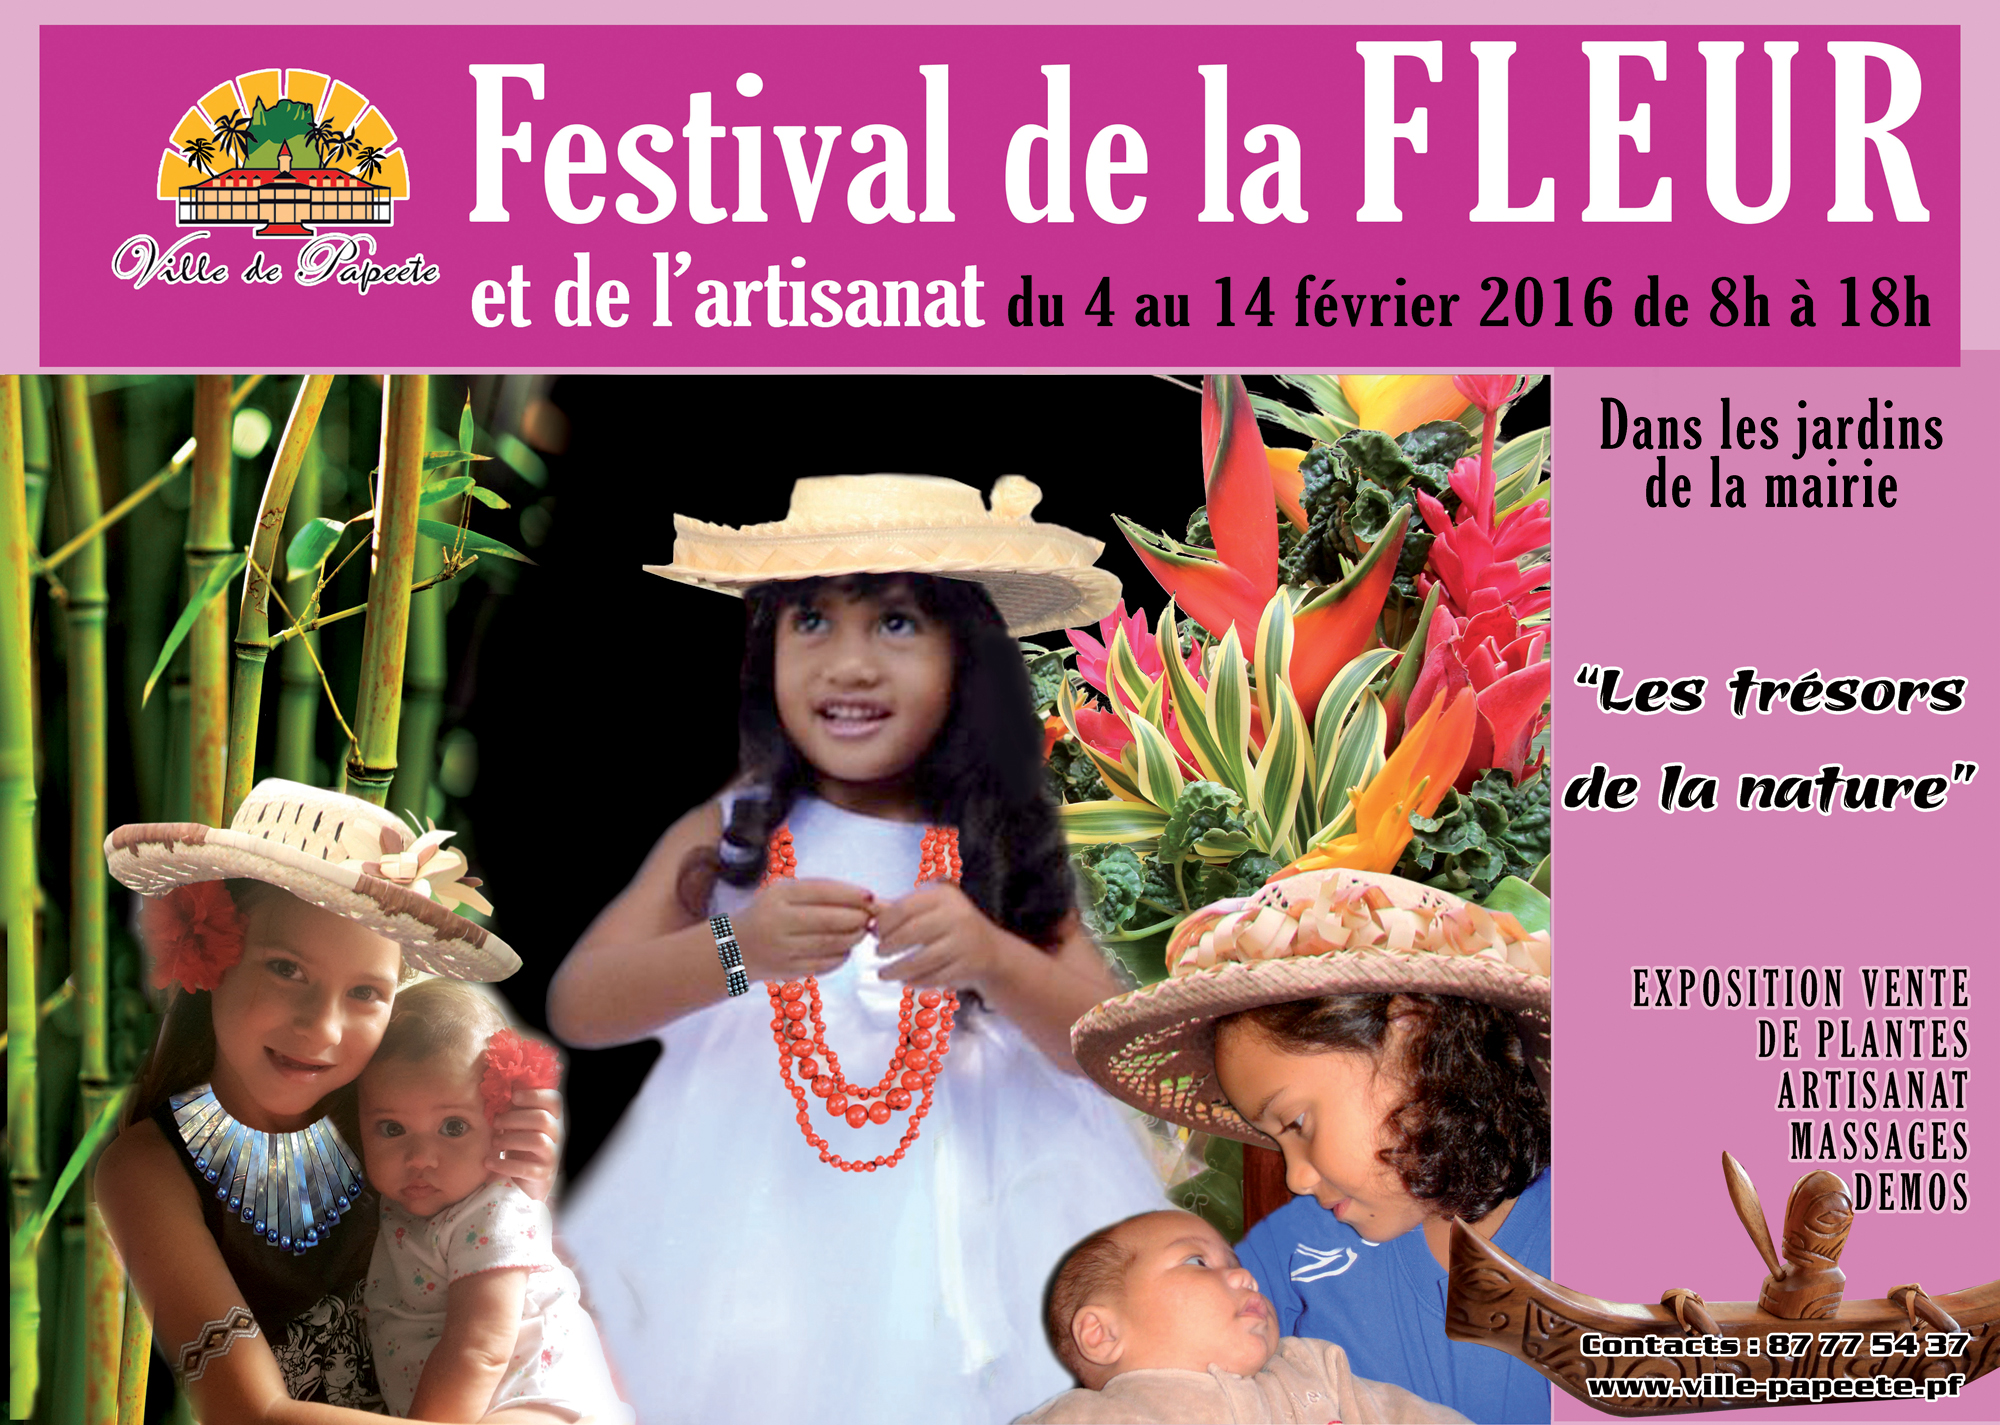 Le Festival de la fleur et de l'artisanat commence demain